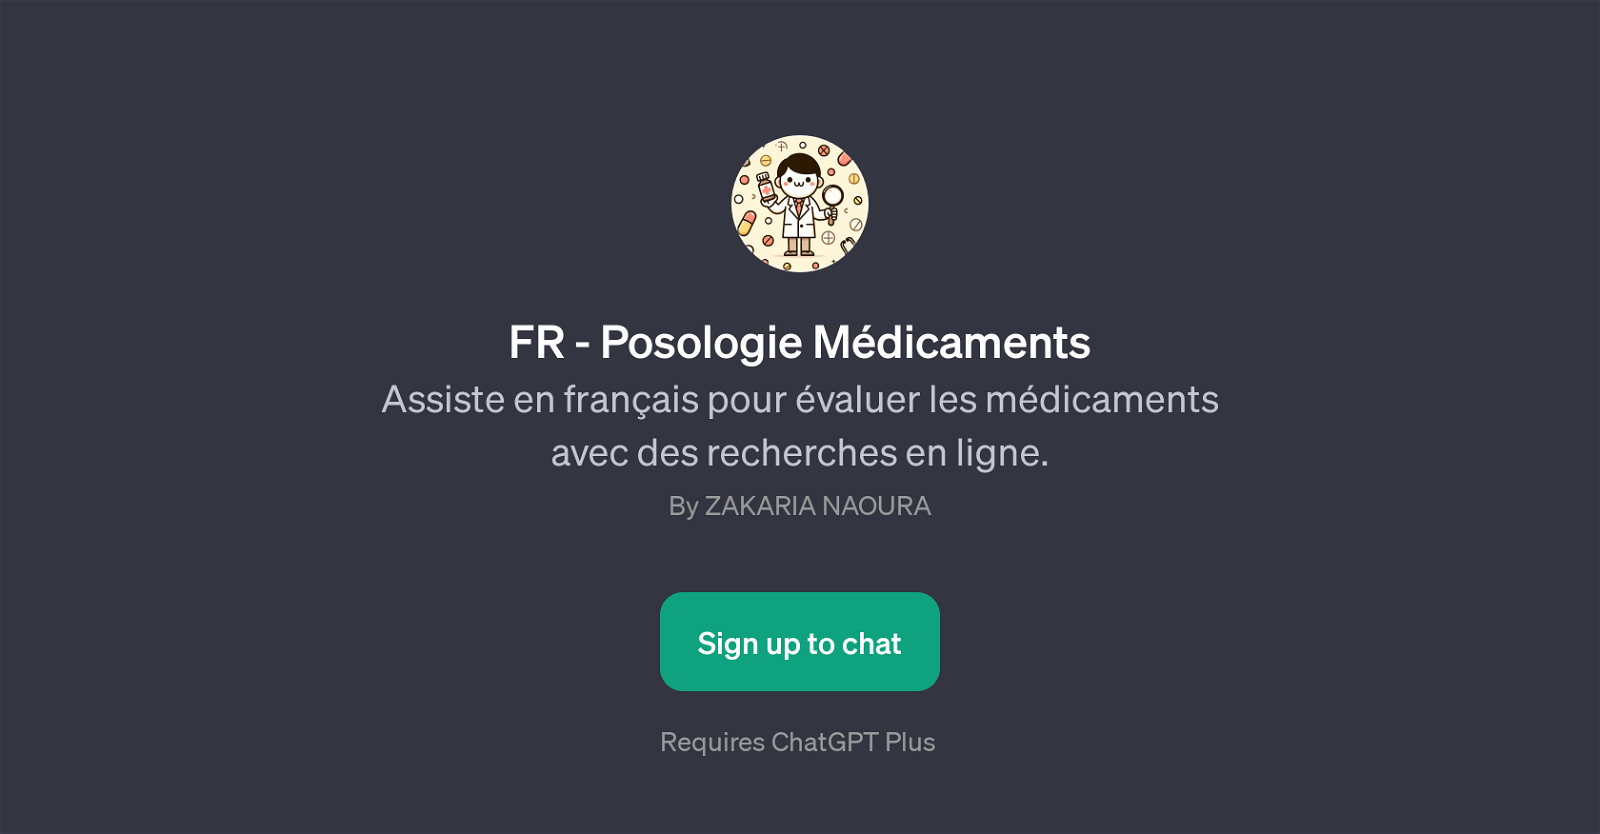 FR - Posologie Mdicaments website